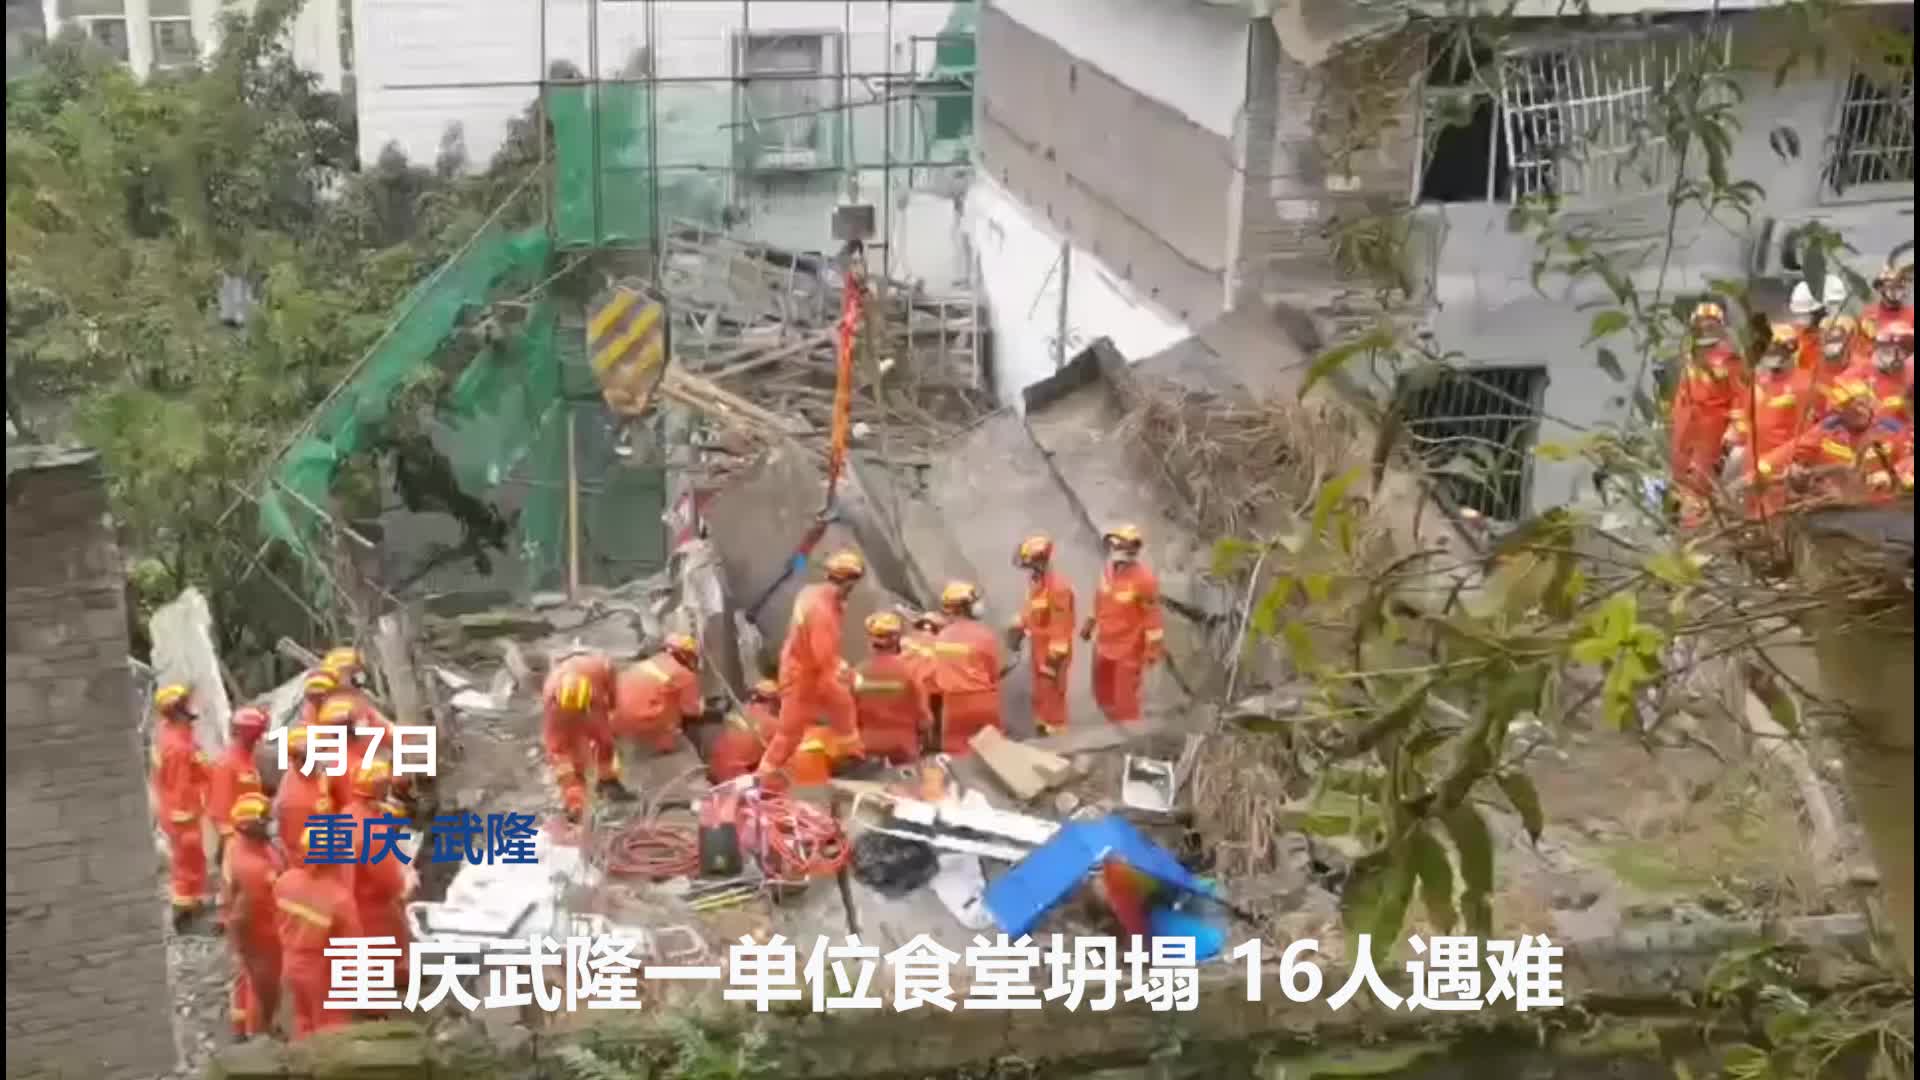 重庆一街道办机关食堂疑燃气泄漏燃爆后垮塌致16死 事发时职工正用餐